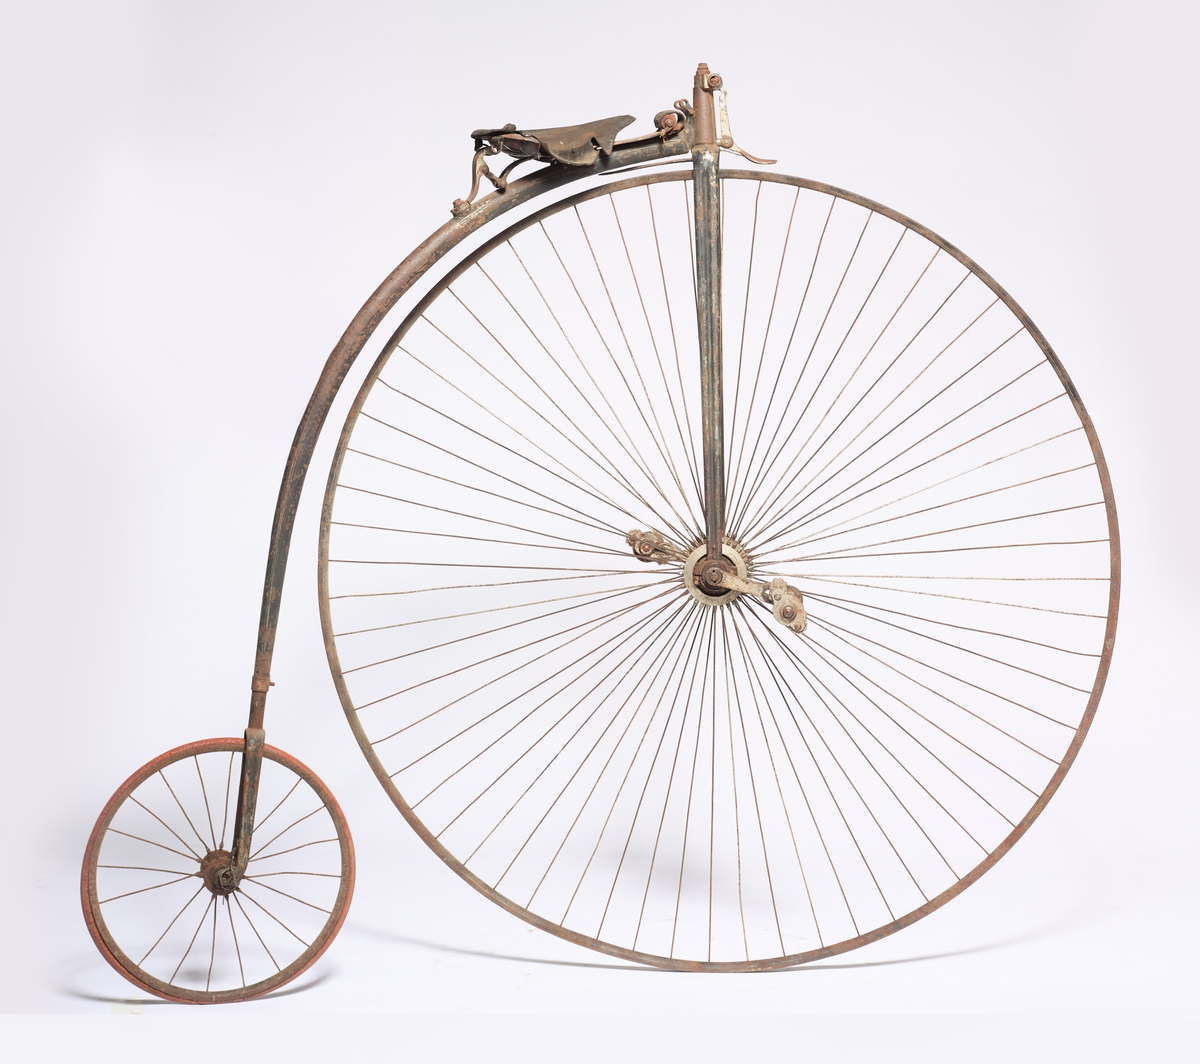 Sykkelen har ett stort og ett lite hjul. Halve styret er en del av bremsen, gummiringen på det store hjulet mangler. Den har vært svartmalt med hvite striper, og er produsert i England.